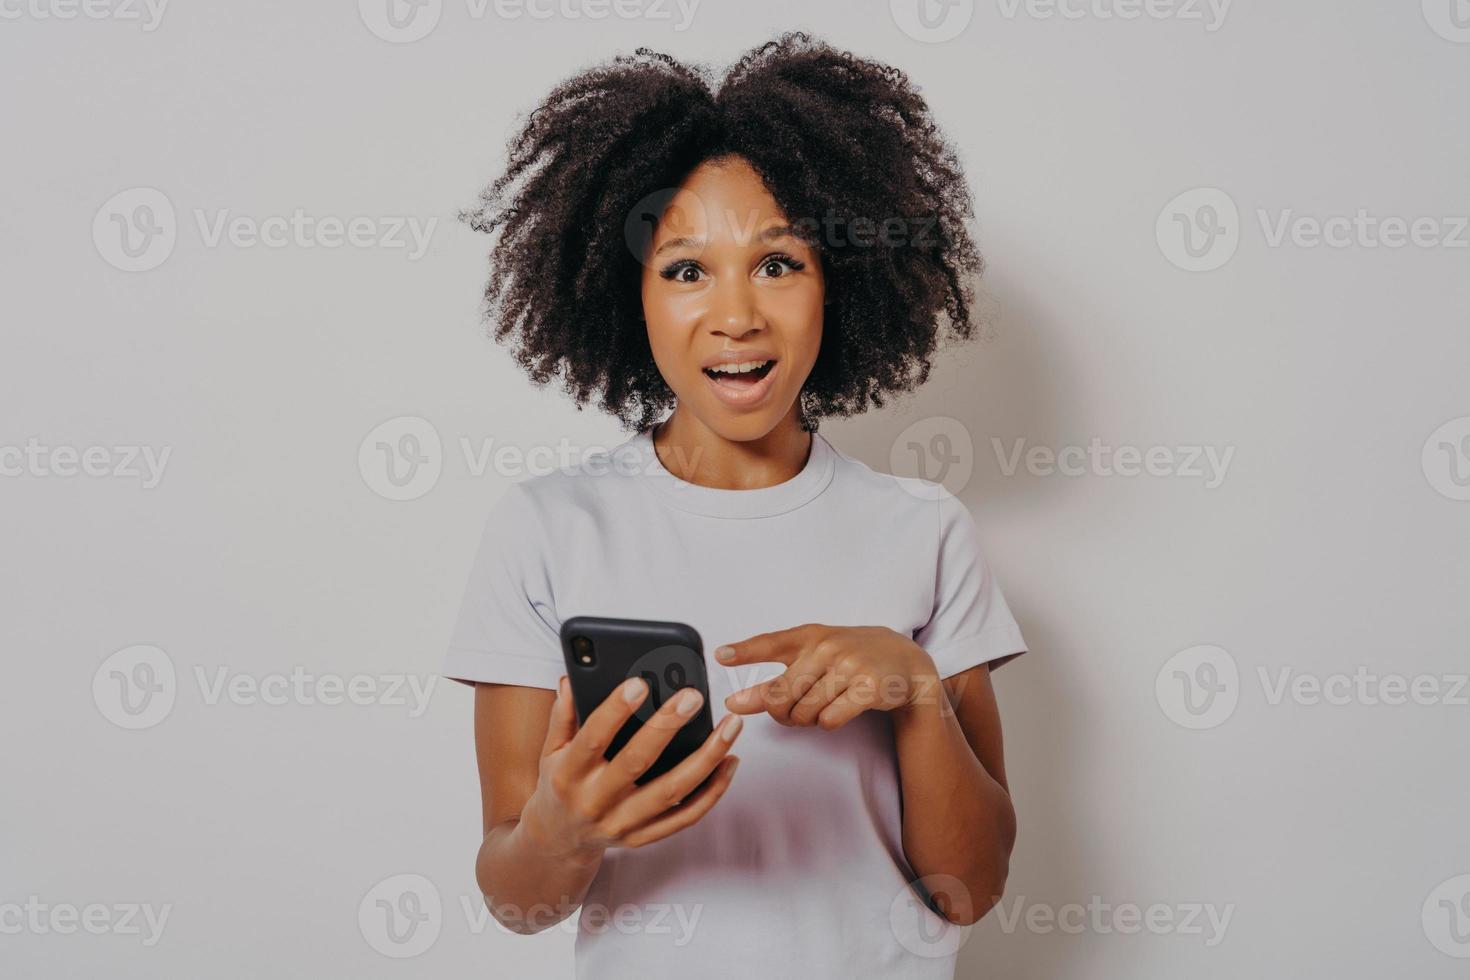 animada feliz senhora de pele escura com cabelos cacheados, segurando o celular foto